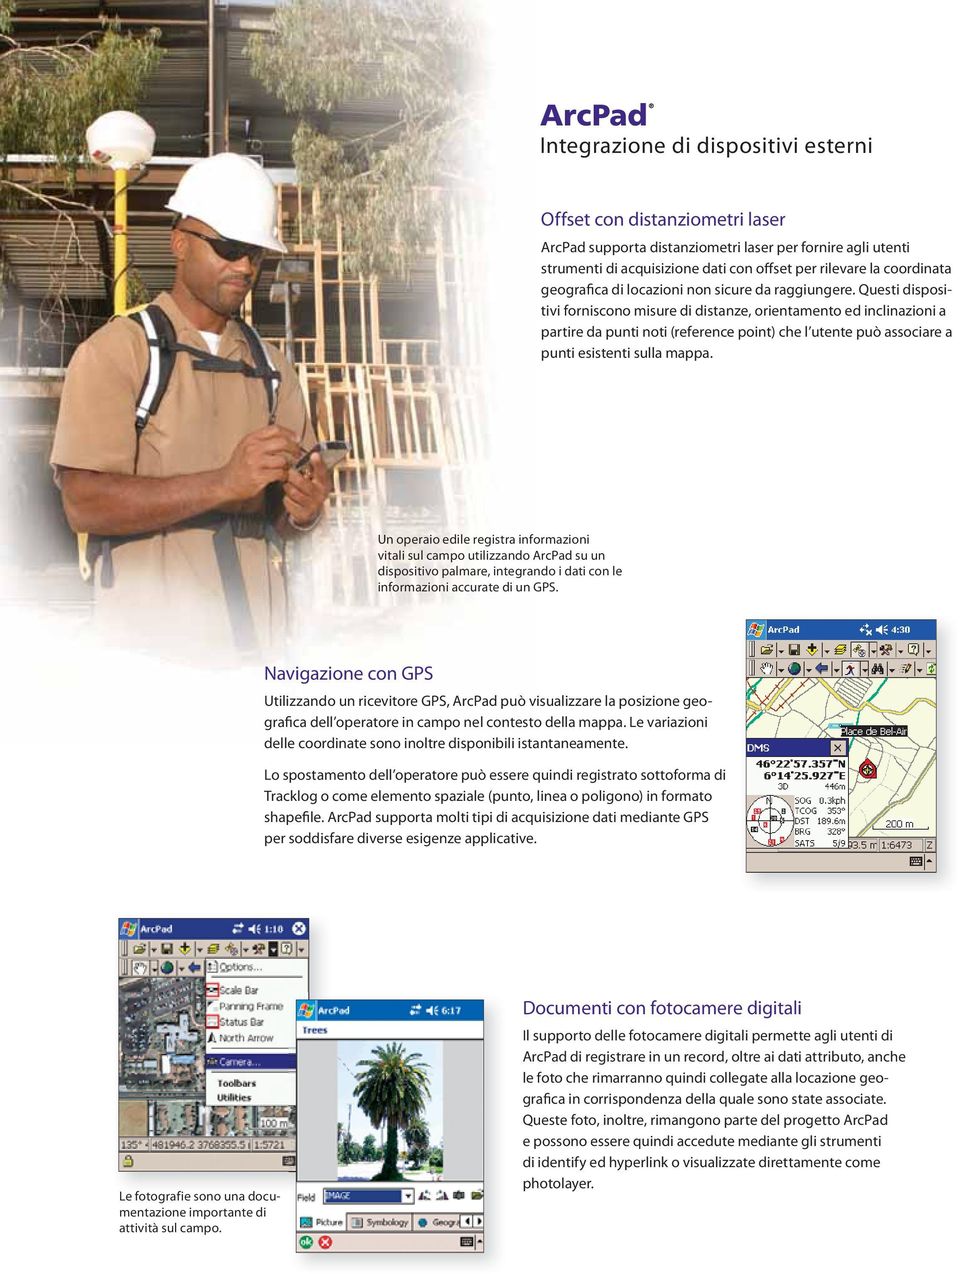 Un operaio edile registra informazioni vitali sul campo utilizzando su un dispositivo palmare, integrando i dati con le informazioni accurate di un GPS.